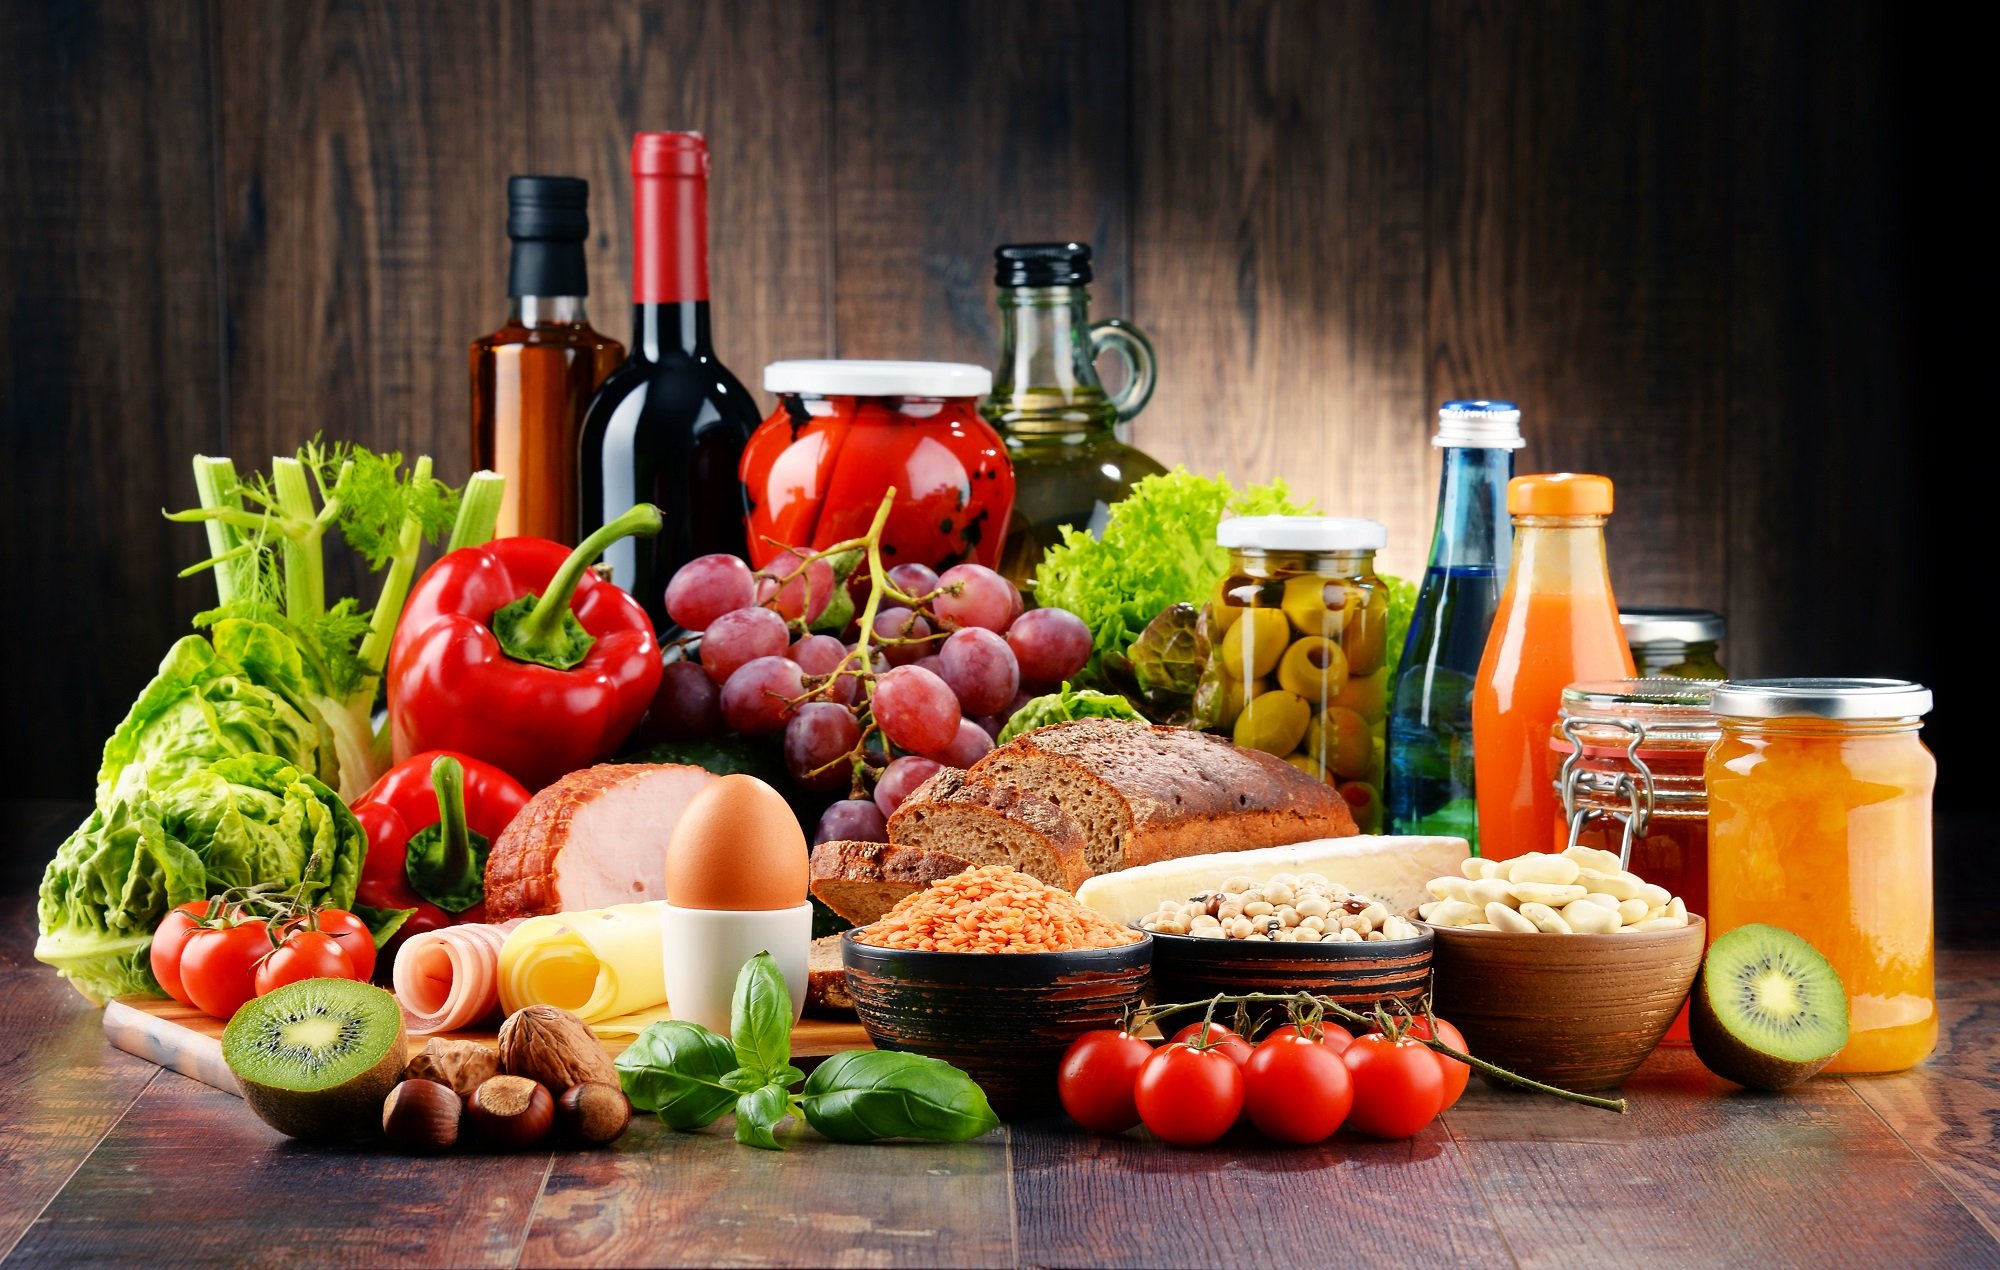 Selección variada de alimentos y productos orgánicos. | Foto: Shutterstock